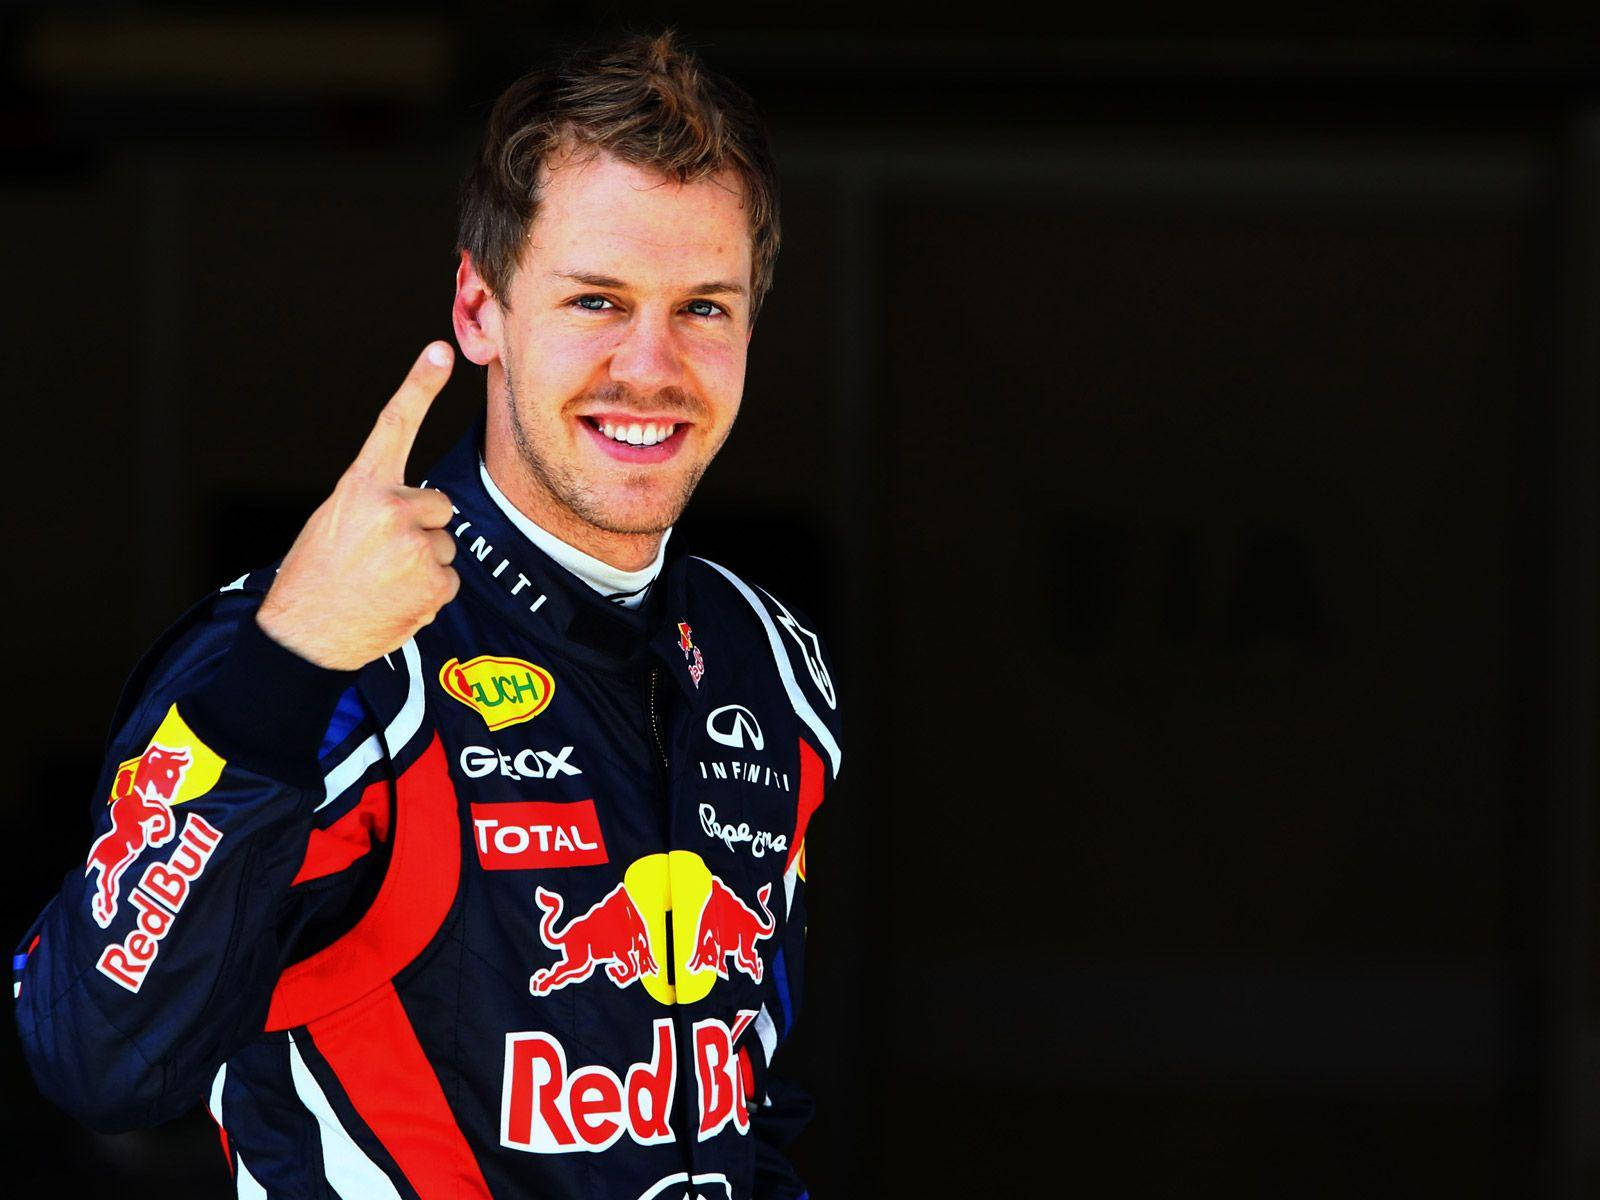 Handsome Sebastian Vettel Portrait Background